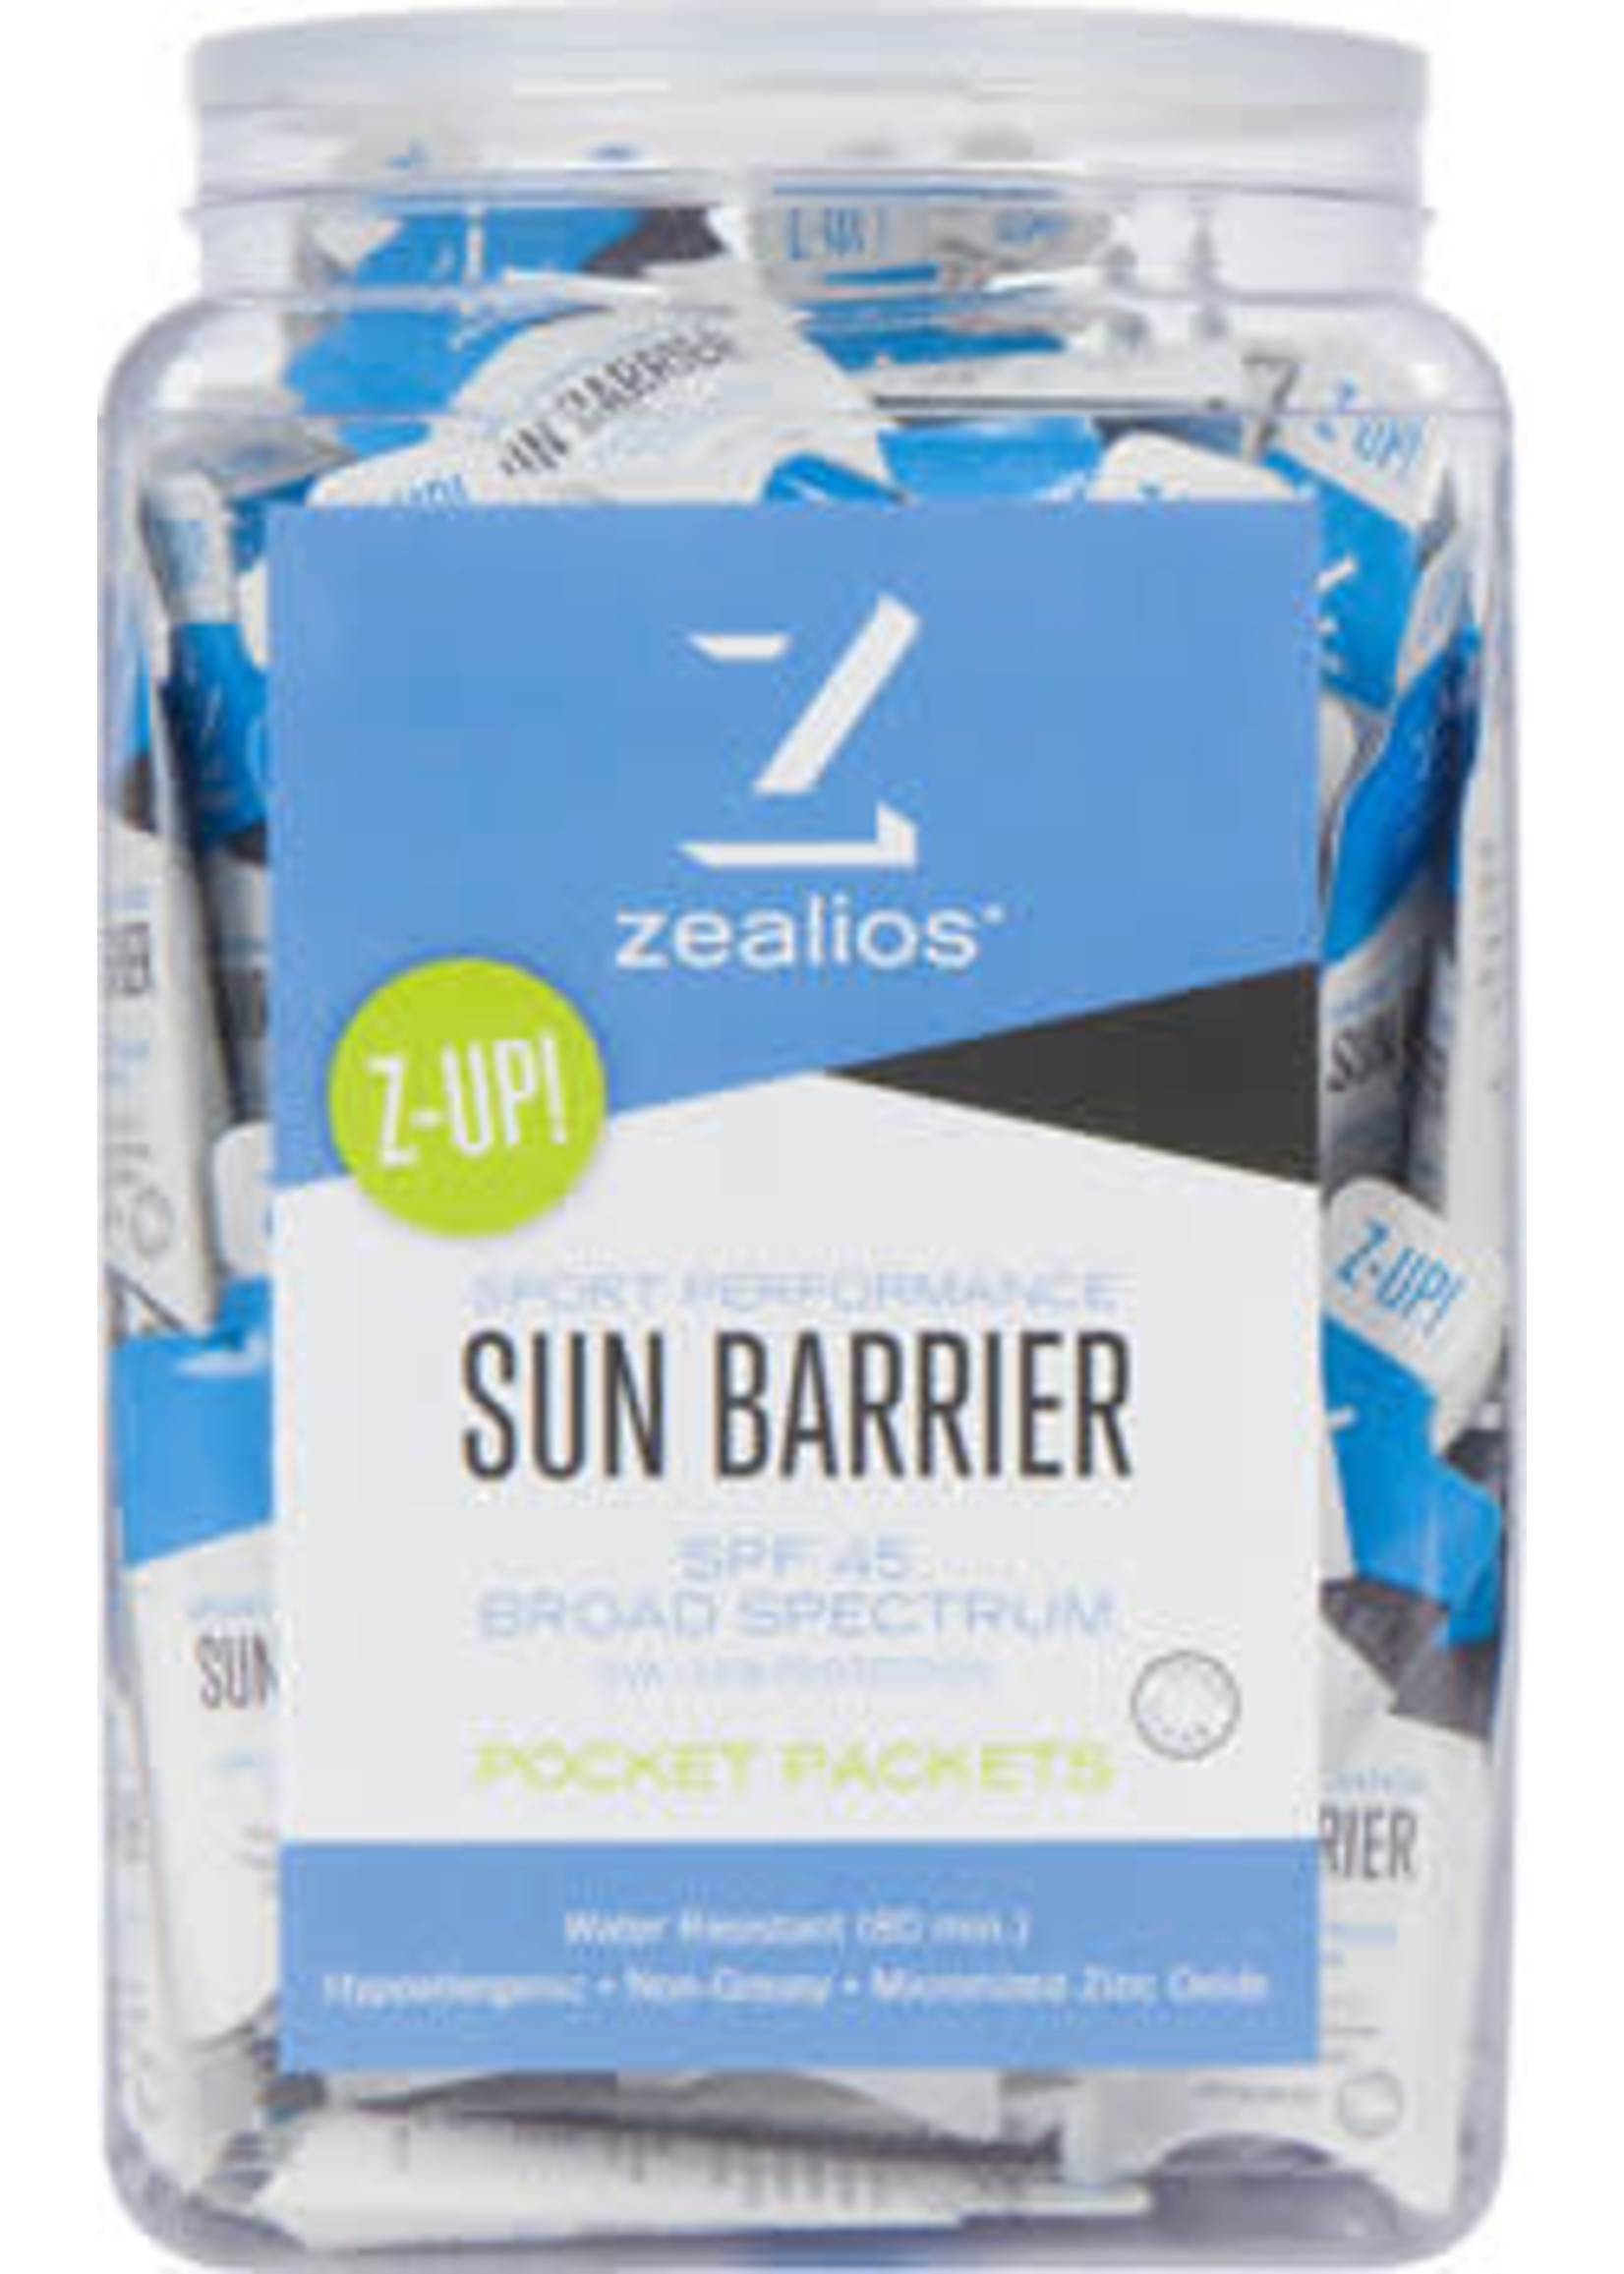 Zealios Zealios Sun Barrier SPF 45 Sunscreen: 10ml single use packets